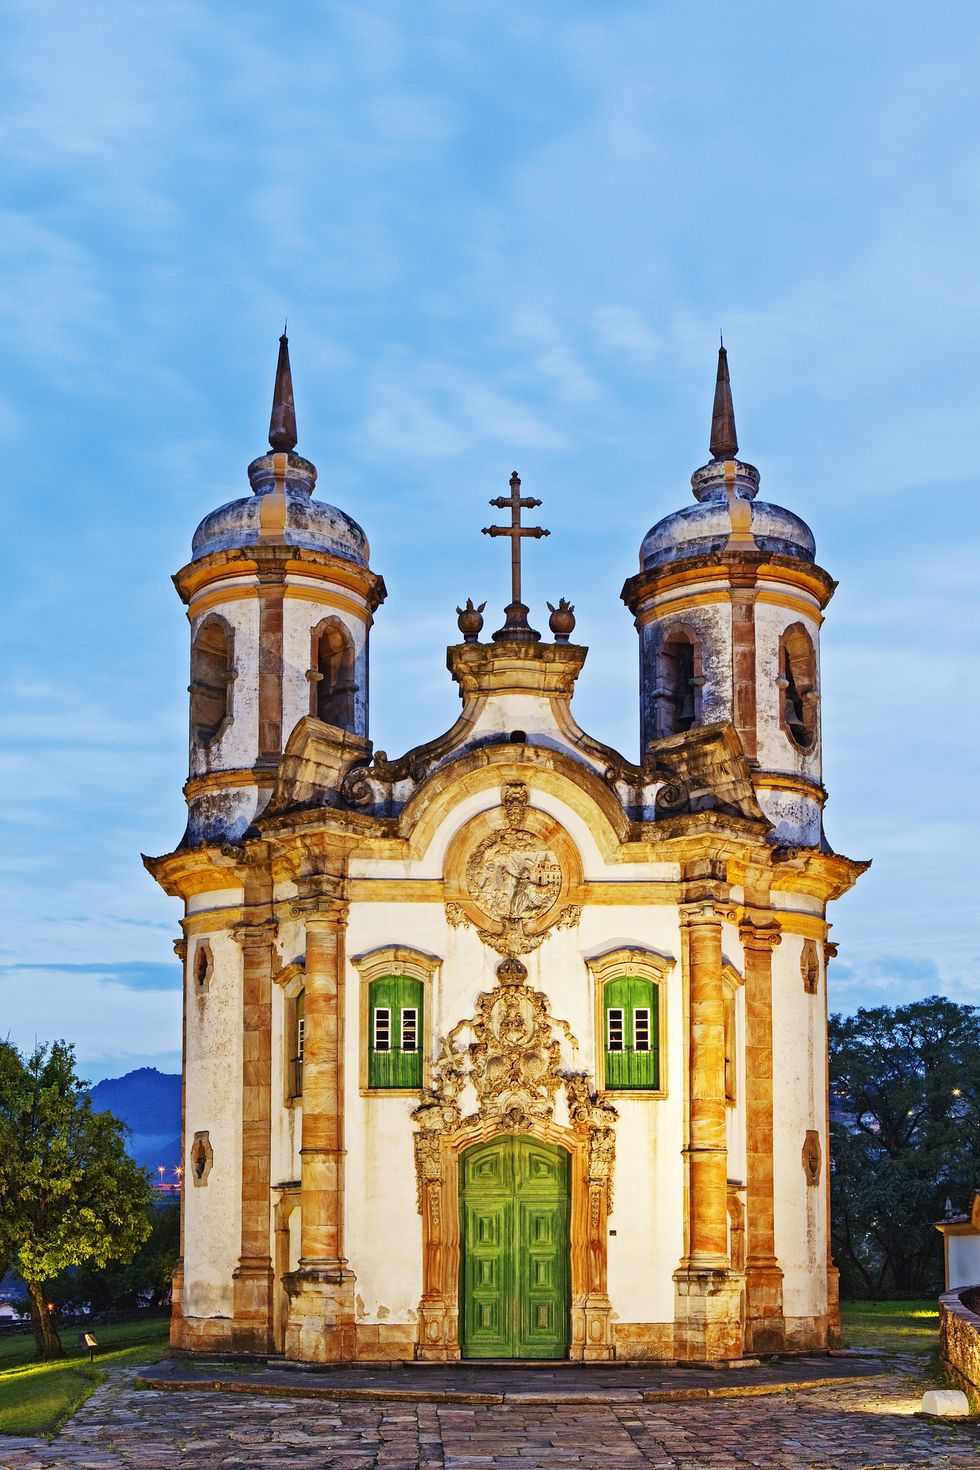 Sao Francisco de Assis, Ouro Preto, Minas Gerais